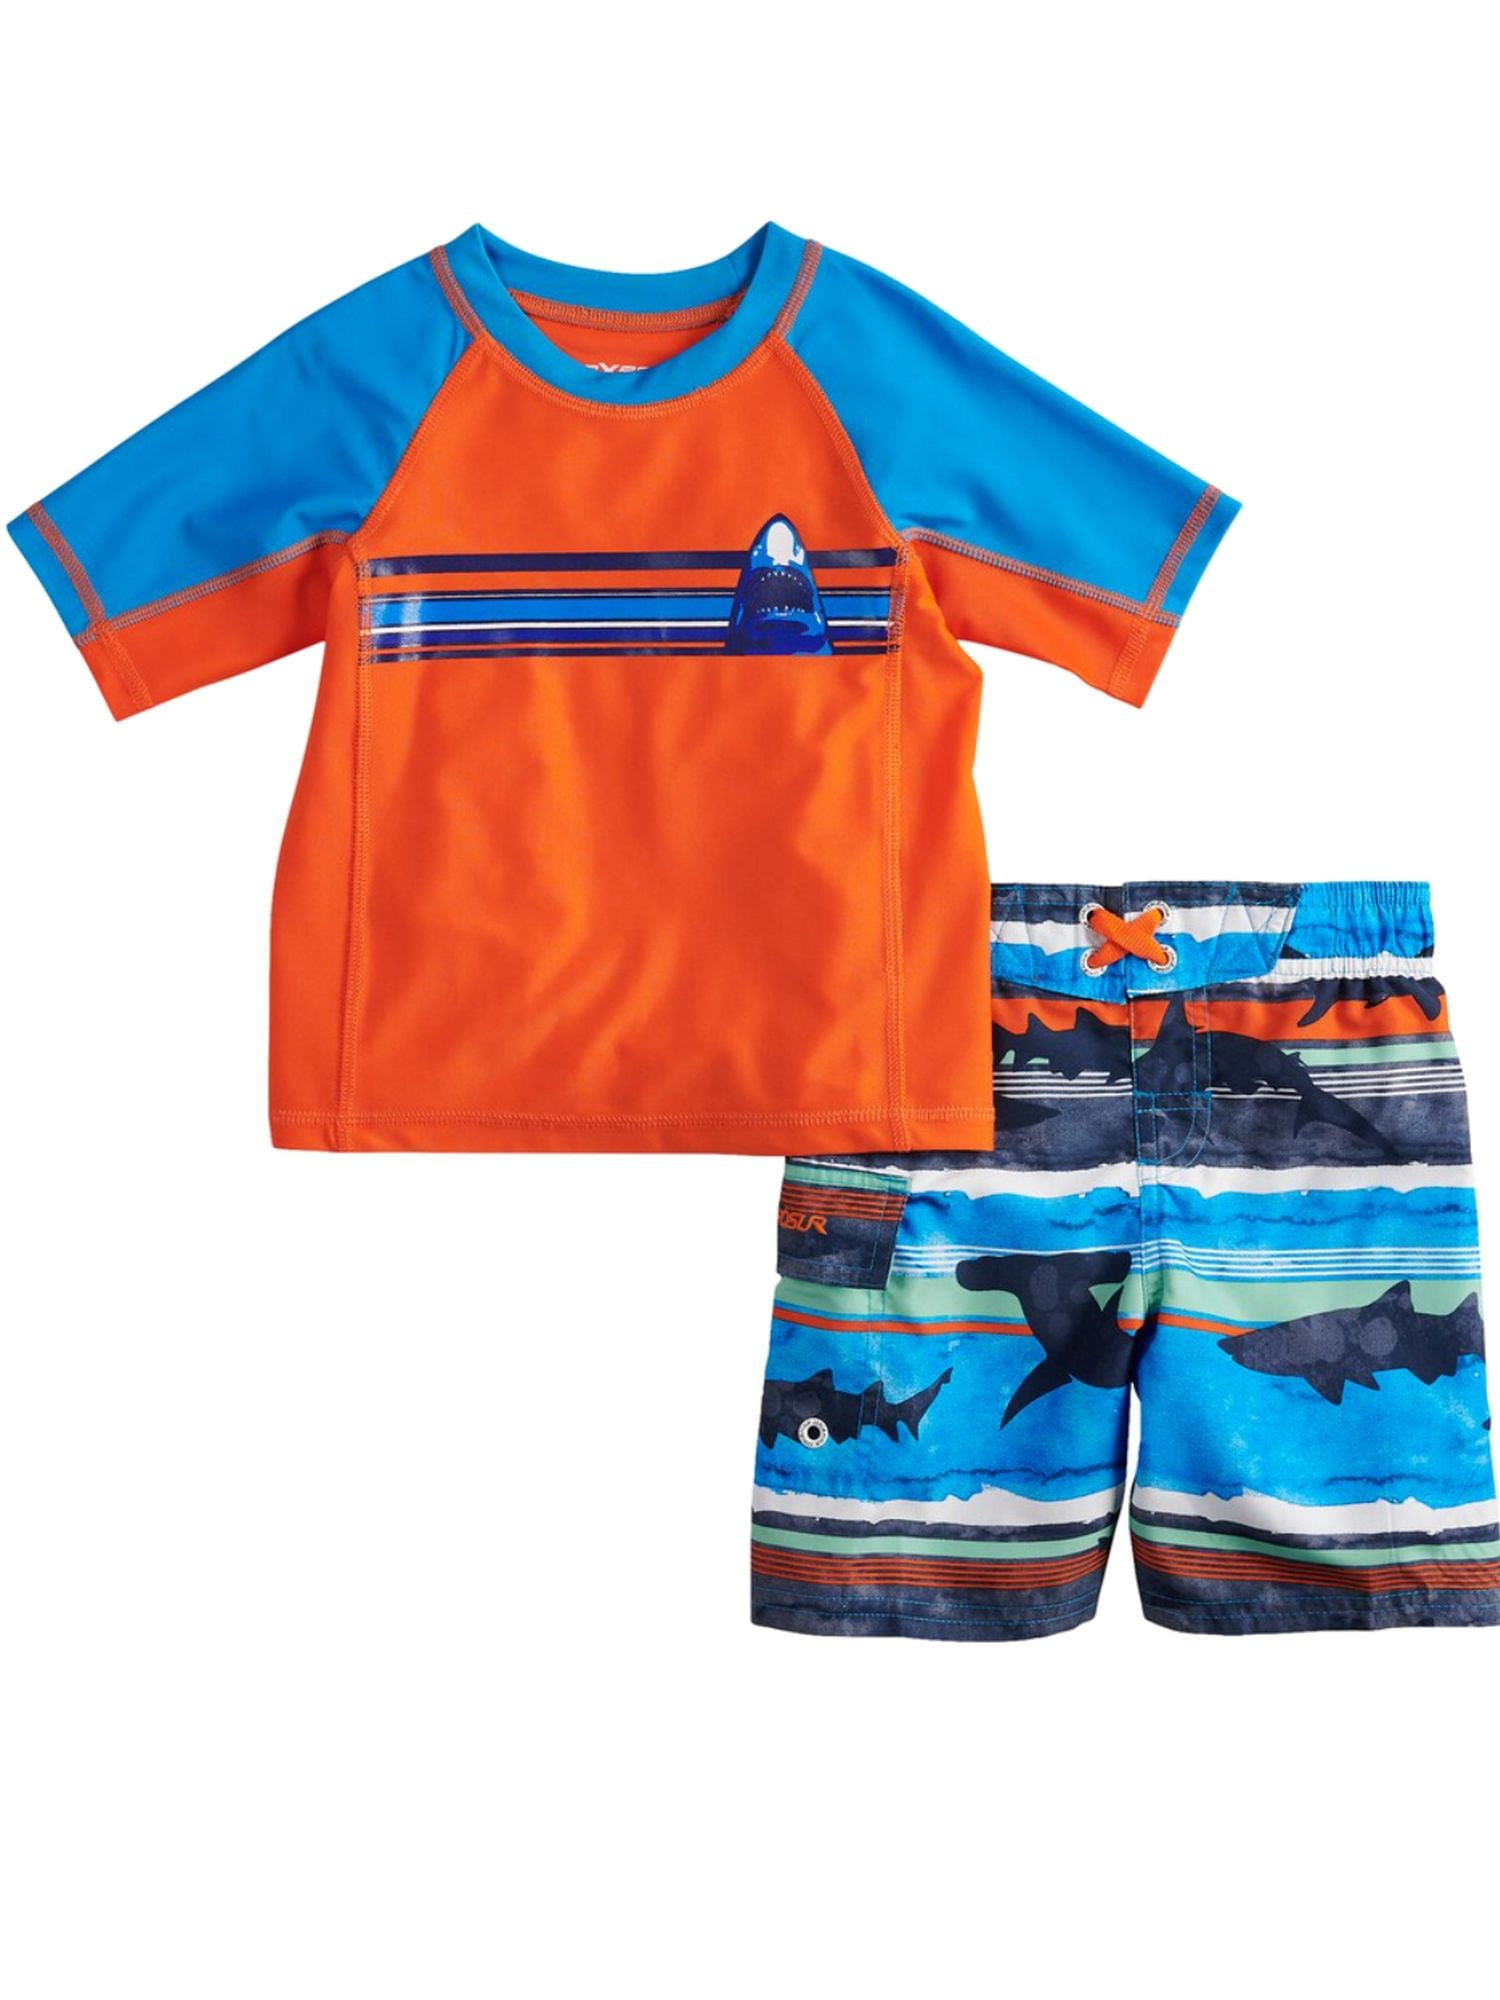 New Joe Boxer Boys "SURF" Swim Trunks Swim Suit Bathing Suit 